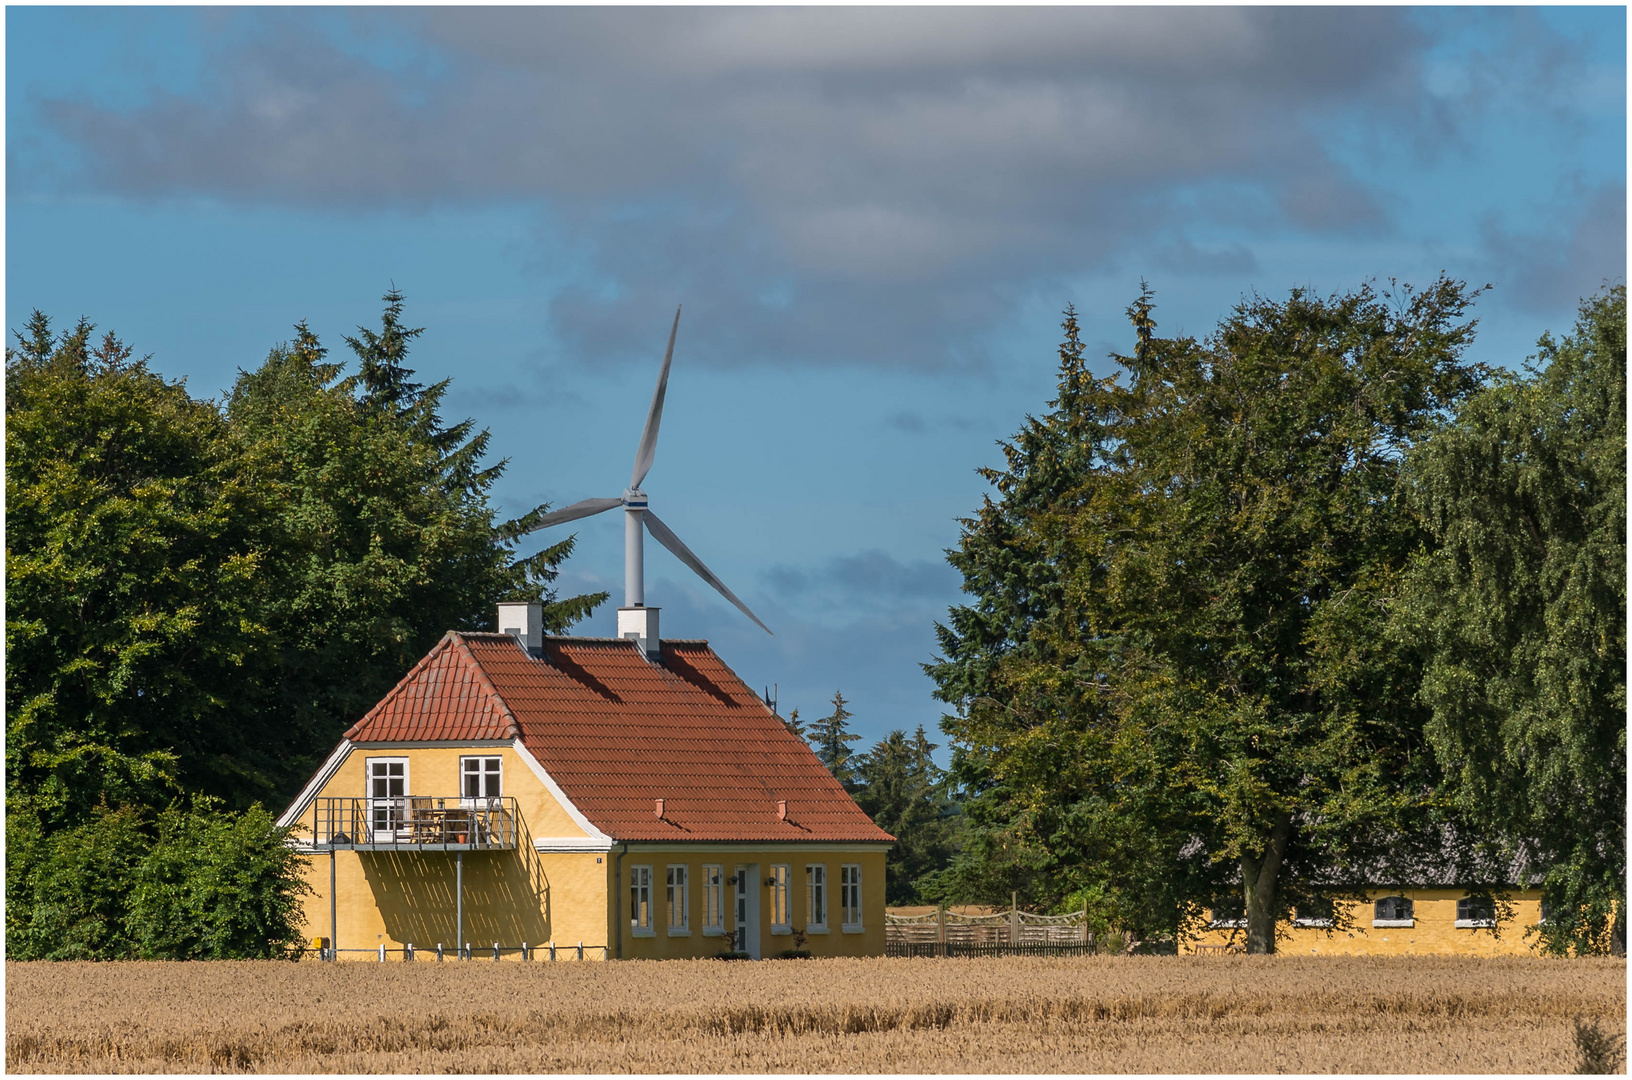 Haus mit Windkraft